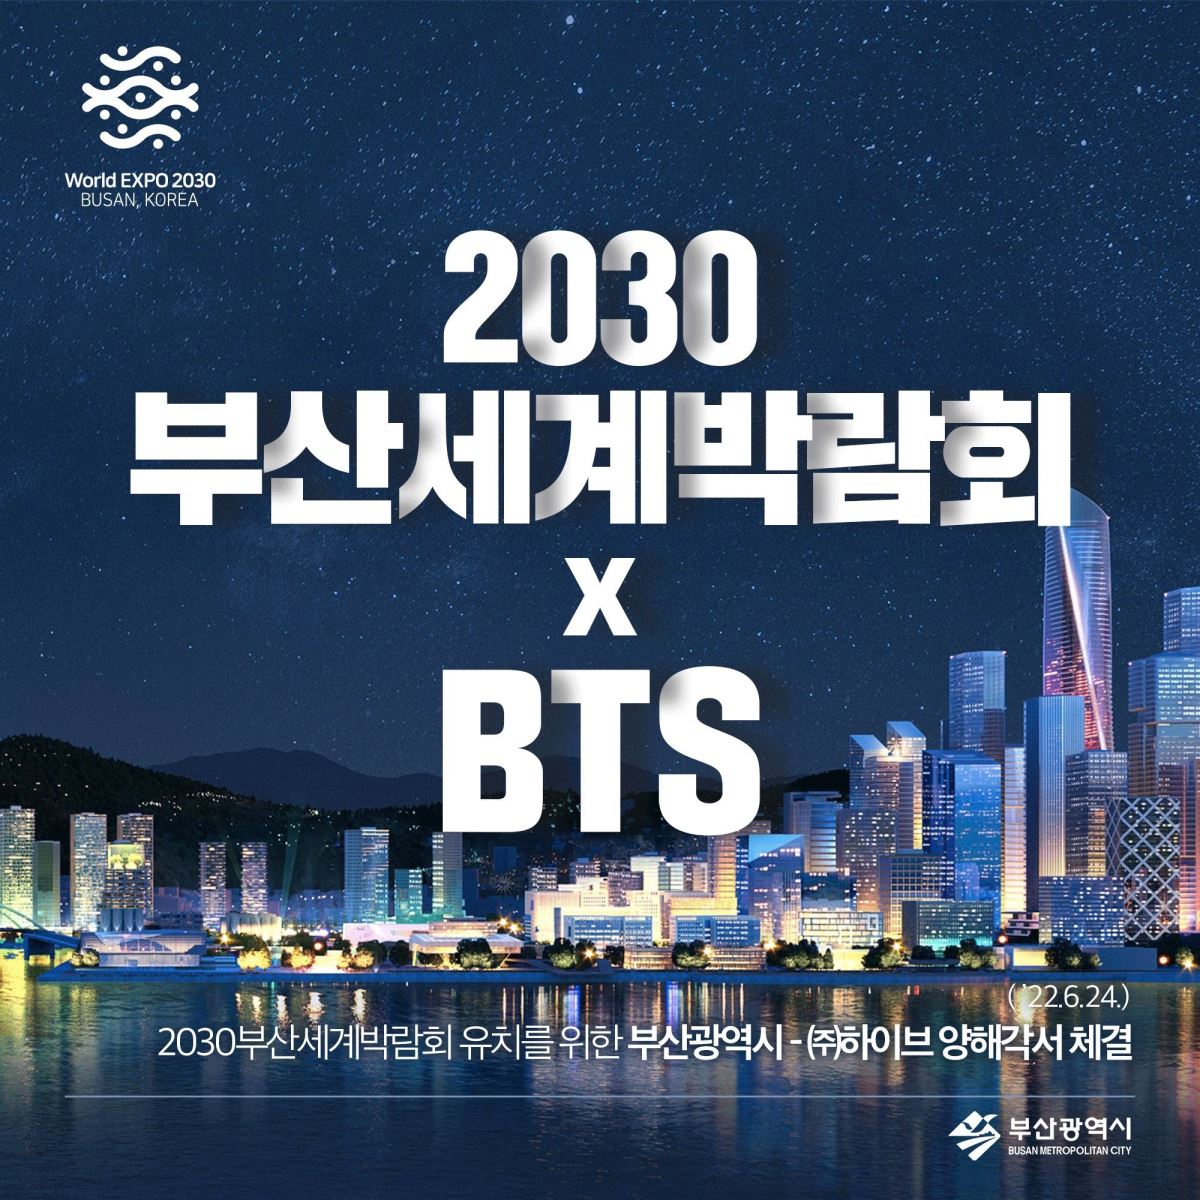 BTS, Hòa nhạc của BTS ở Busan, Trở ngại concert của BTS ở Busan, Jungkook, V BTS